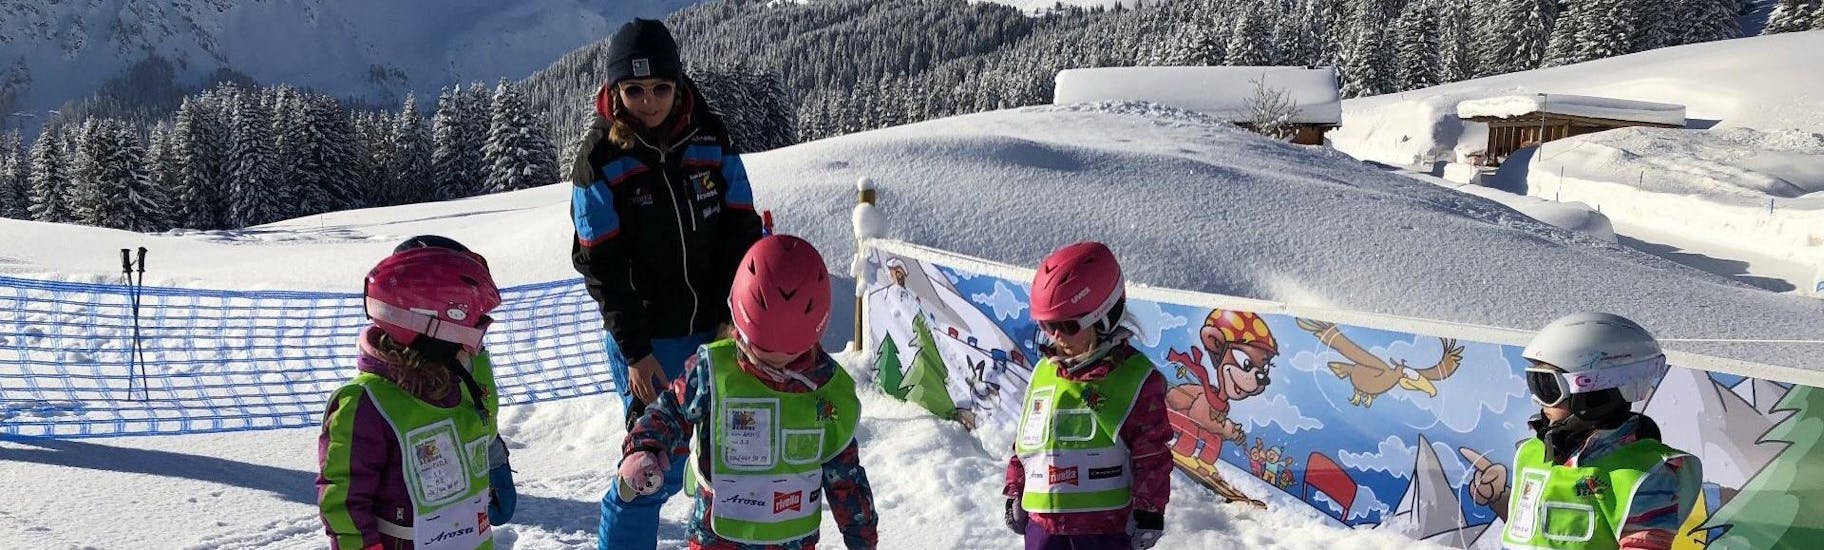 Kleine Kinder bei ihrem Kinderskikurs mit der Skischule ABC Schneesportschule Arosa in Arosa.